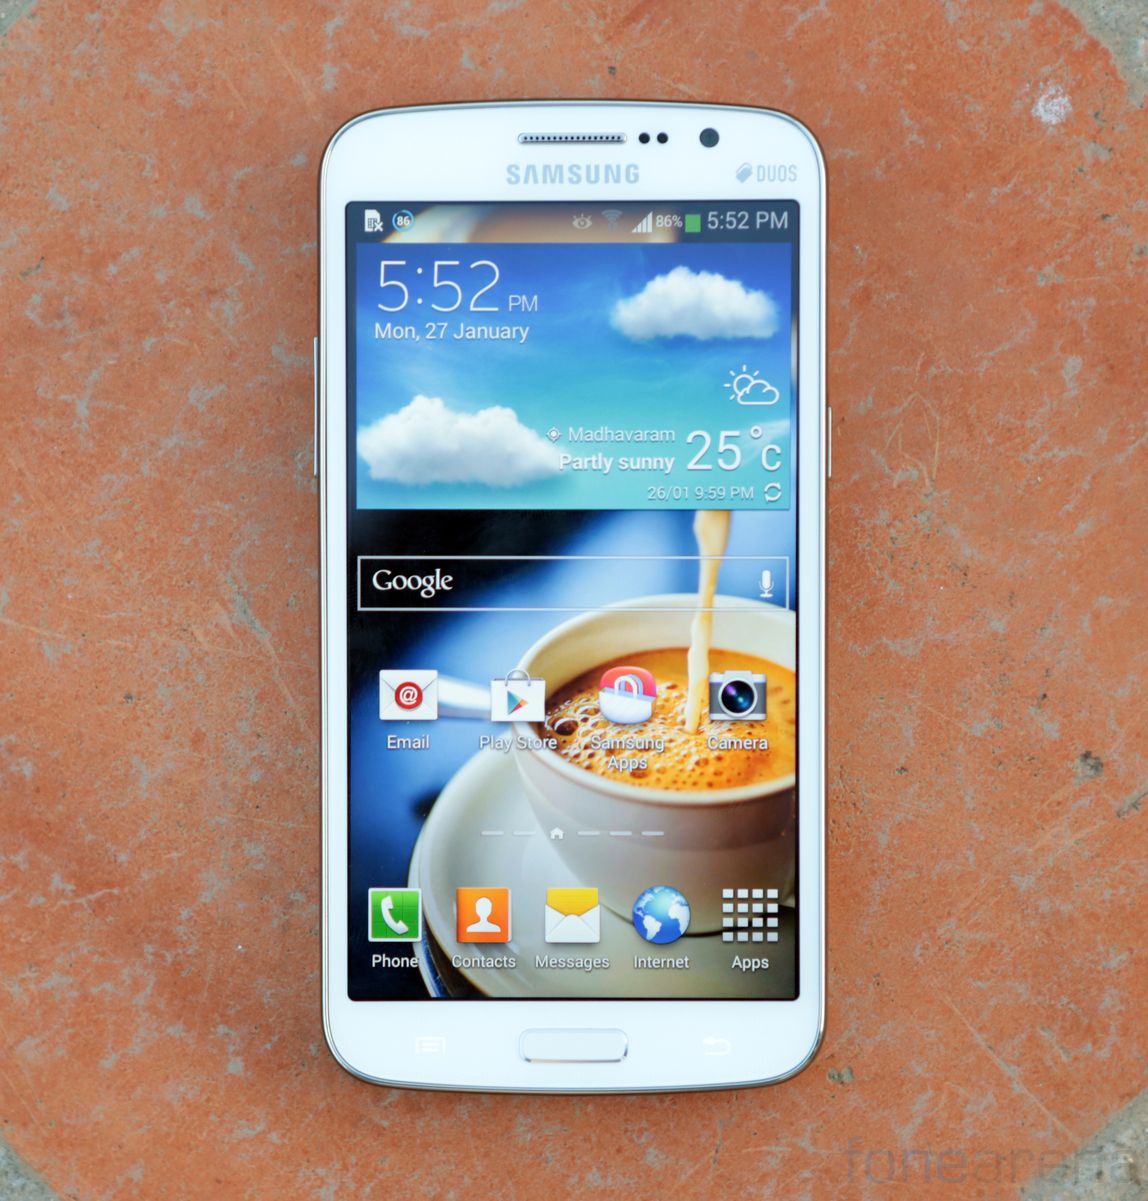 Khi mua smartphone giá rẻ Samsung Galaxy Grand 2, người dùng được trải nghiệm những tính năng ưu việt